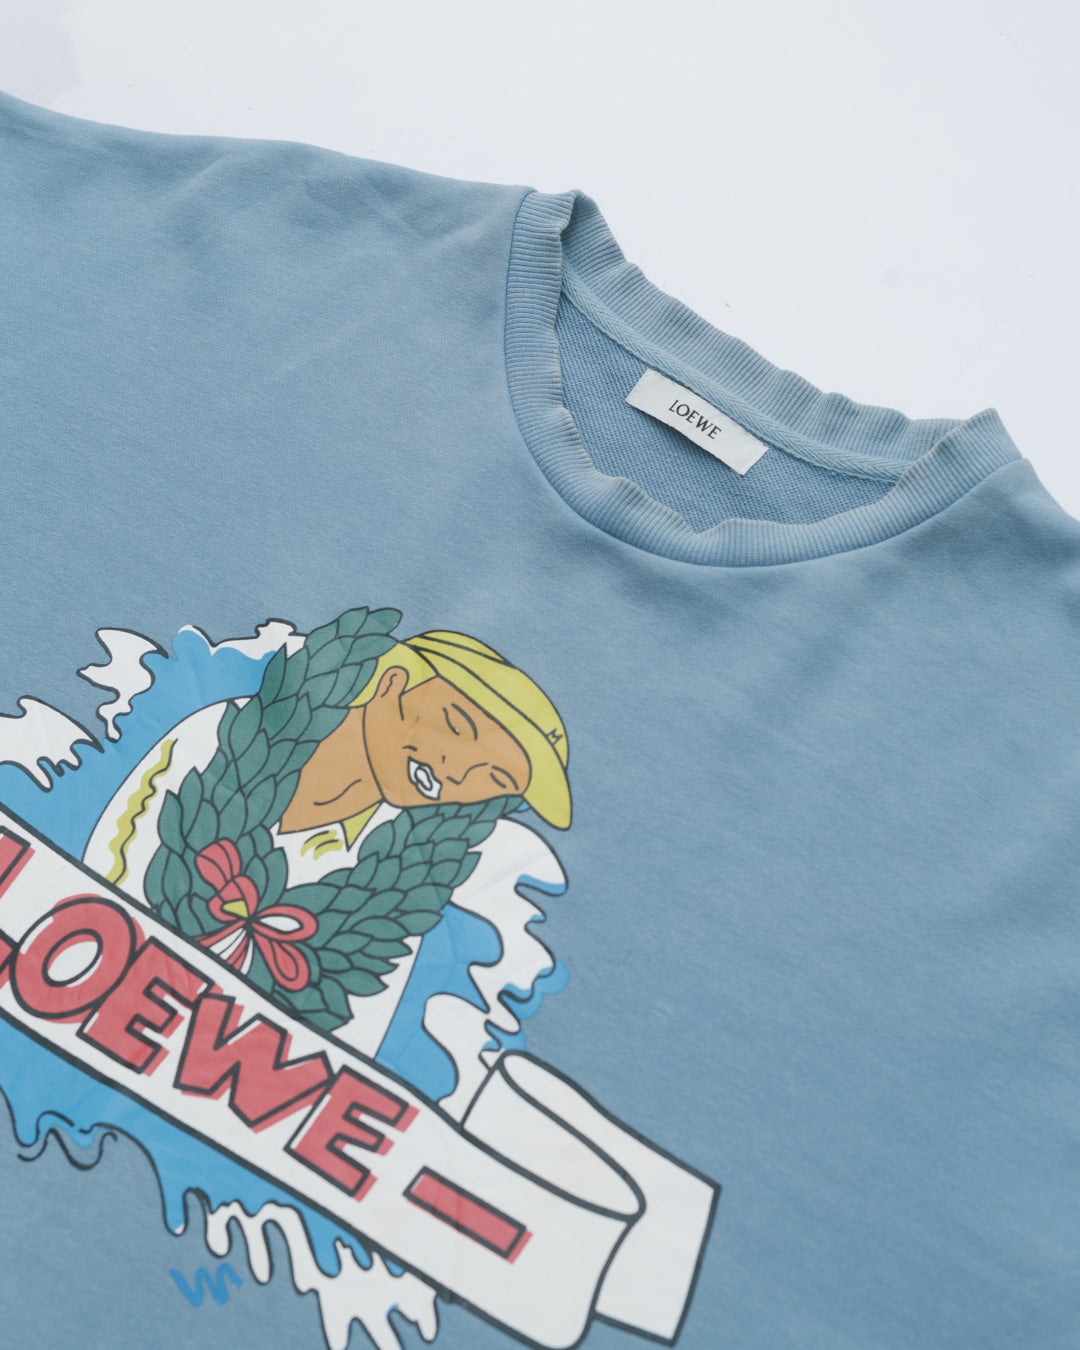 Loewe Toon Print Sweatshirt